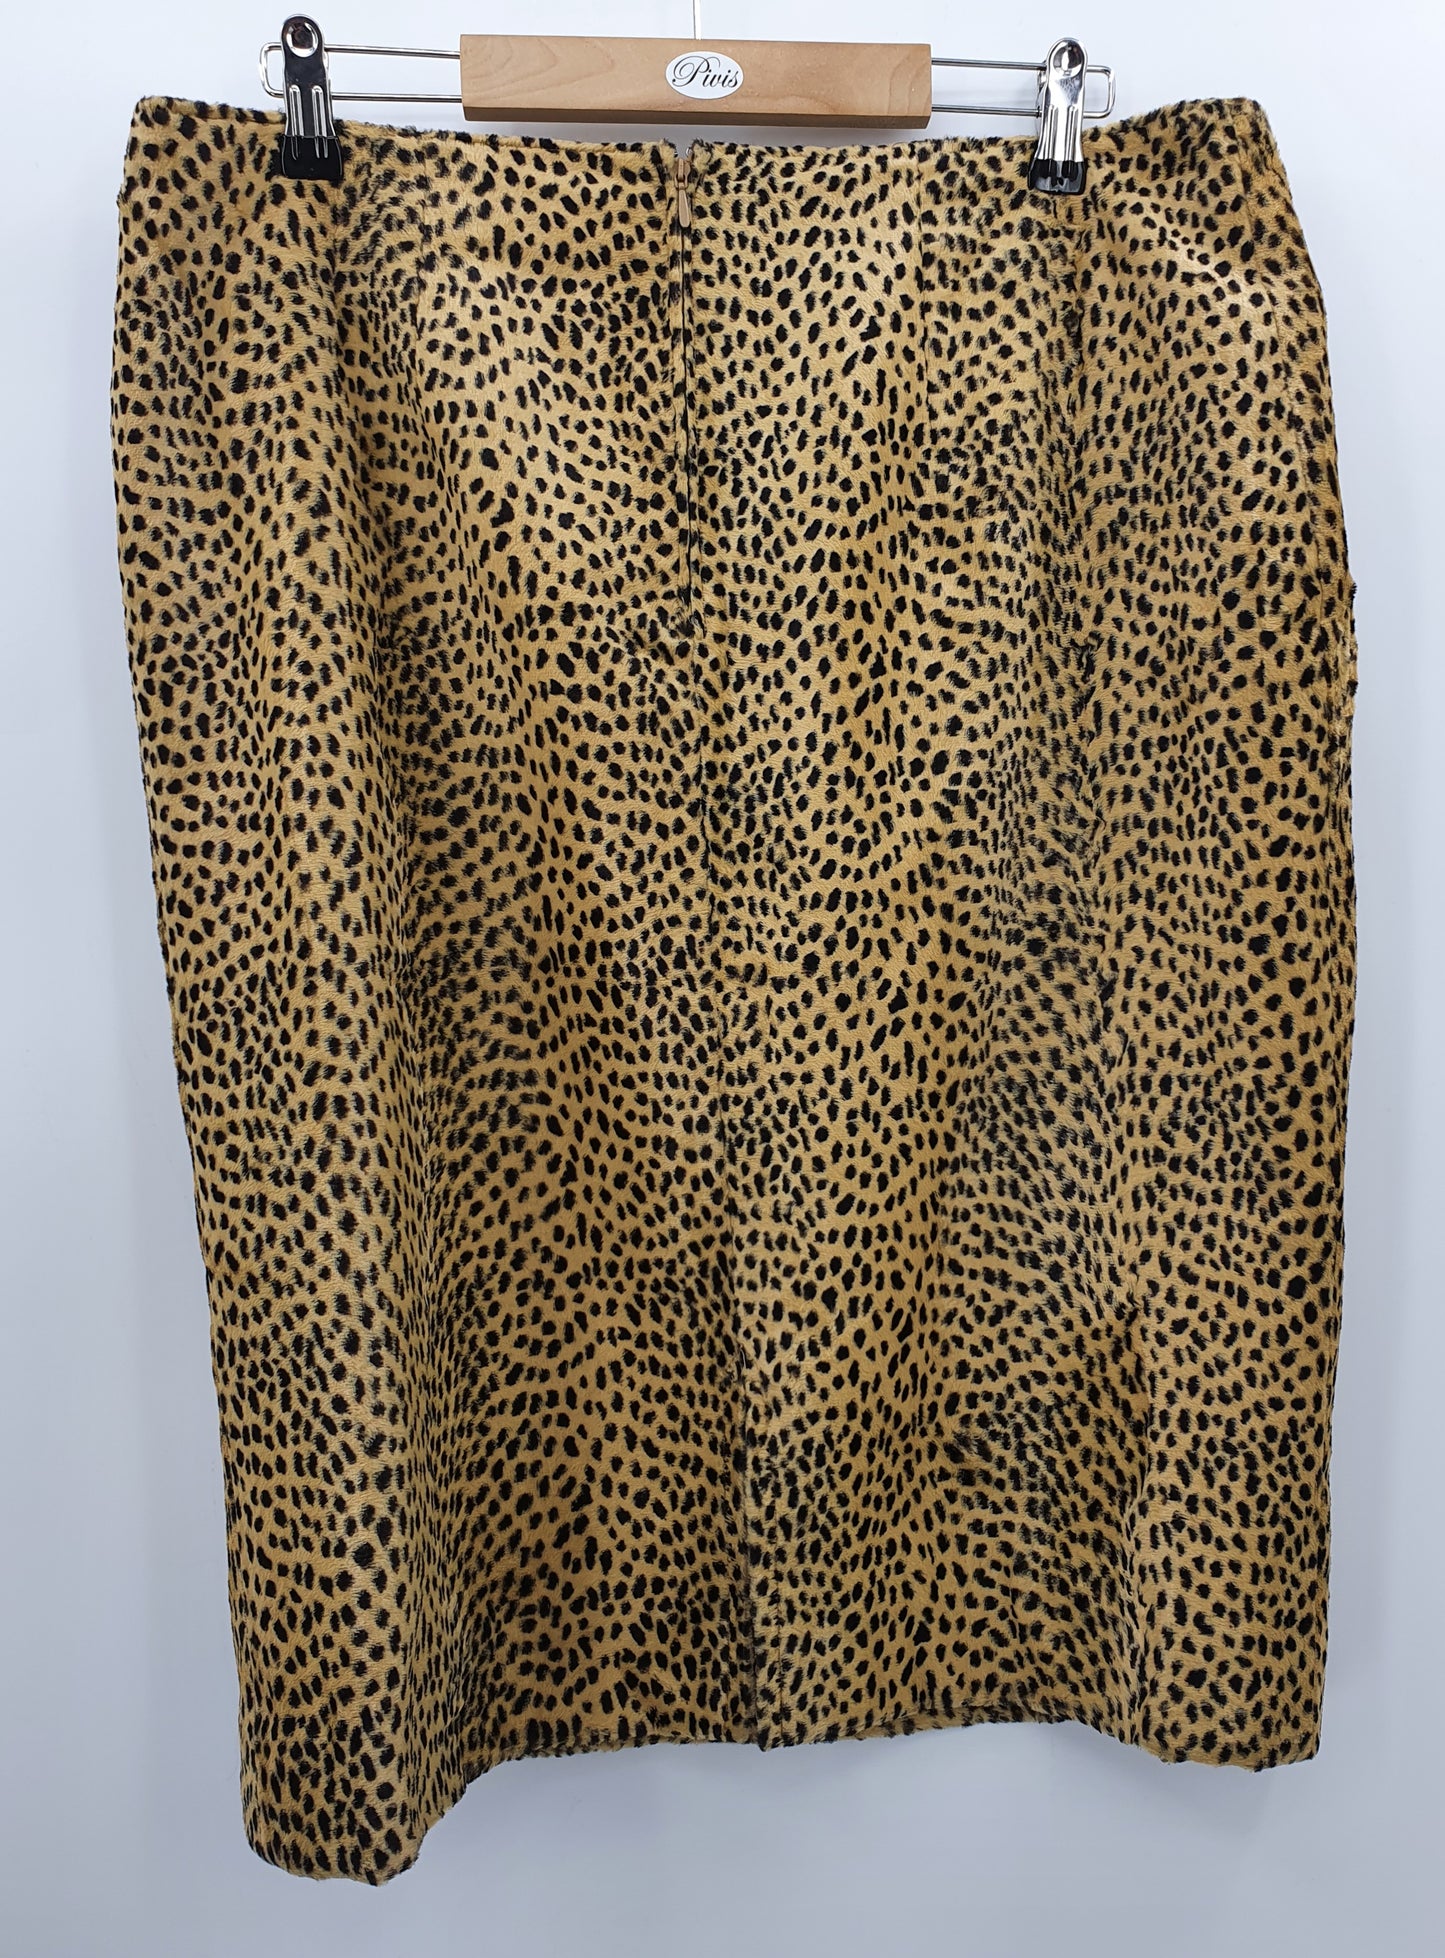 Leopardikuvioinen hame, 80-90-luku, vyöt.ymp. 90cm, kokoarvio 44